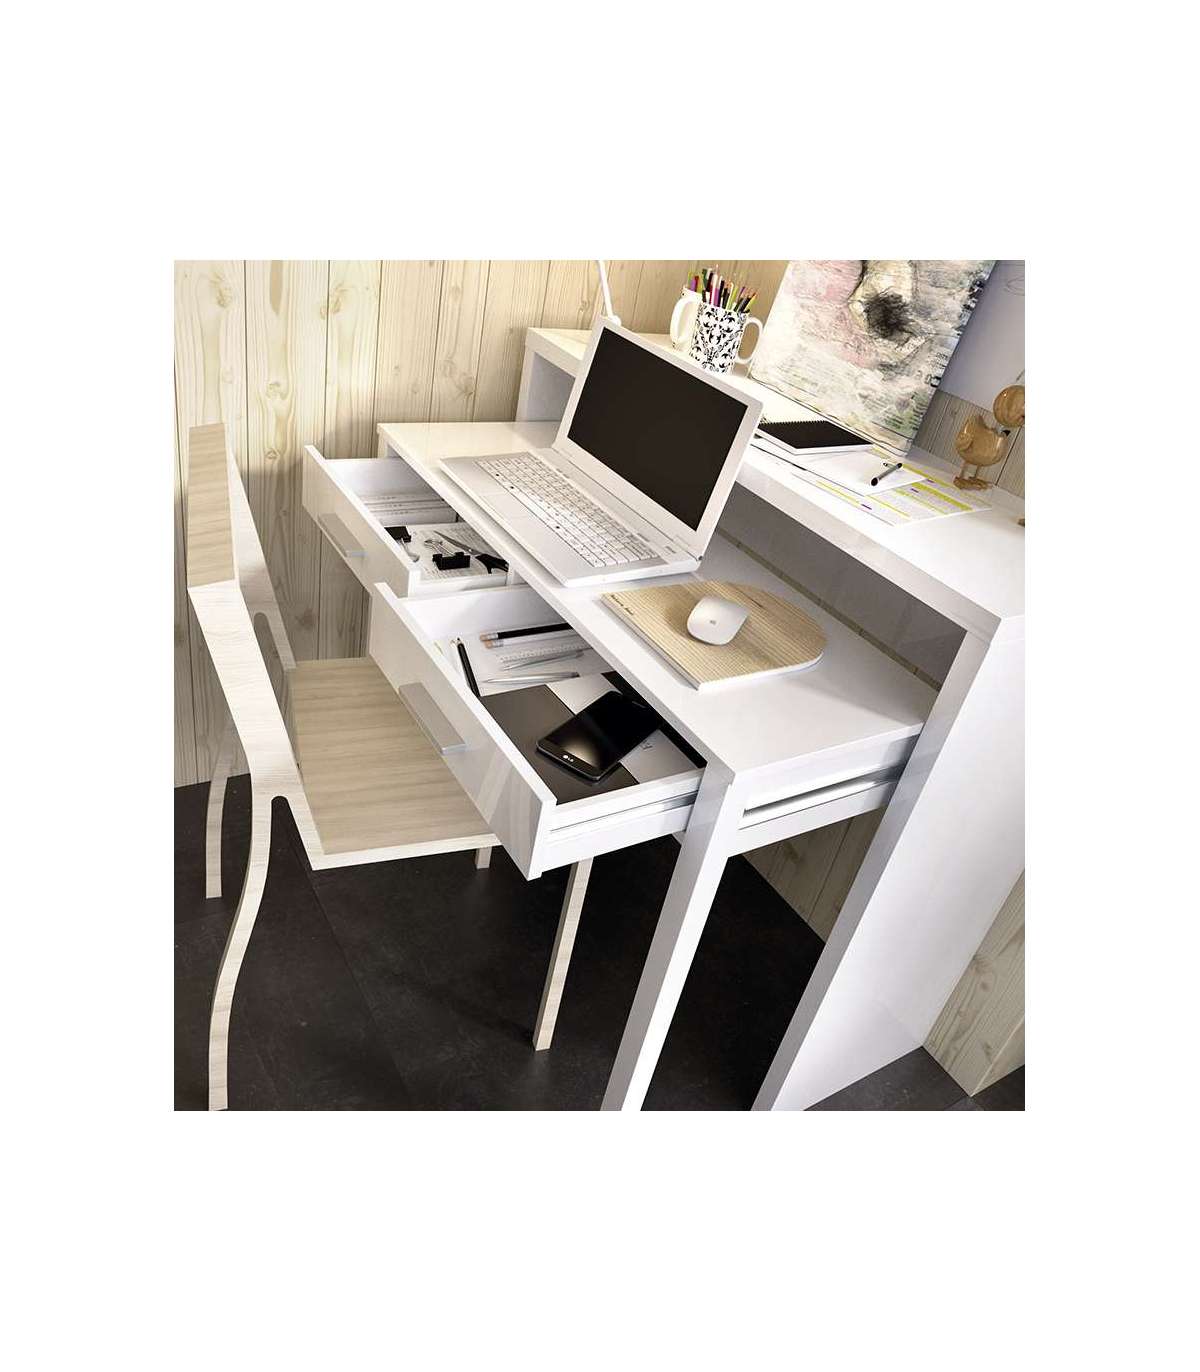 Mesa ordenador para despacho, escritorio o oficina estudio Blanco